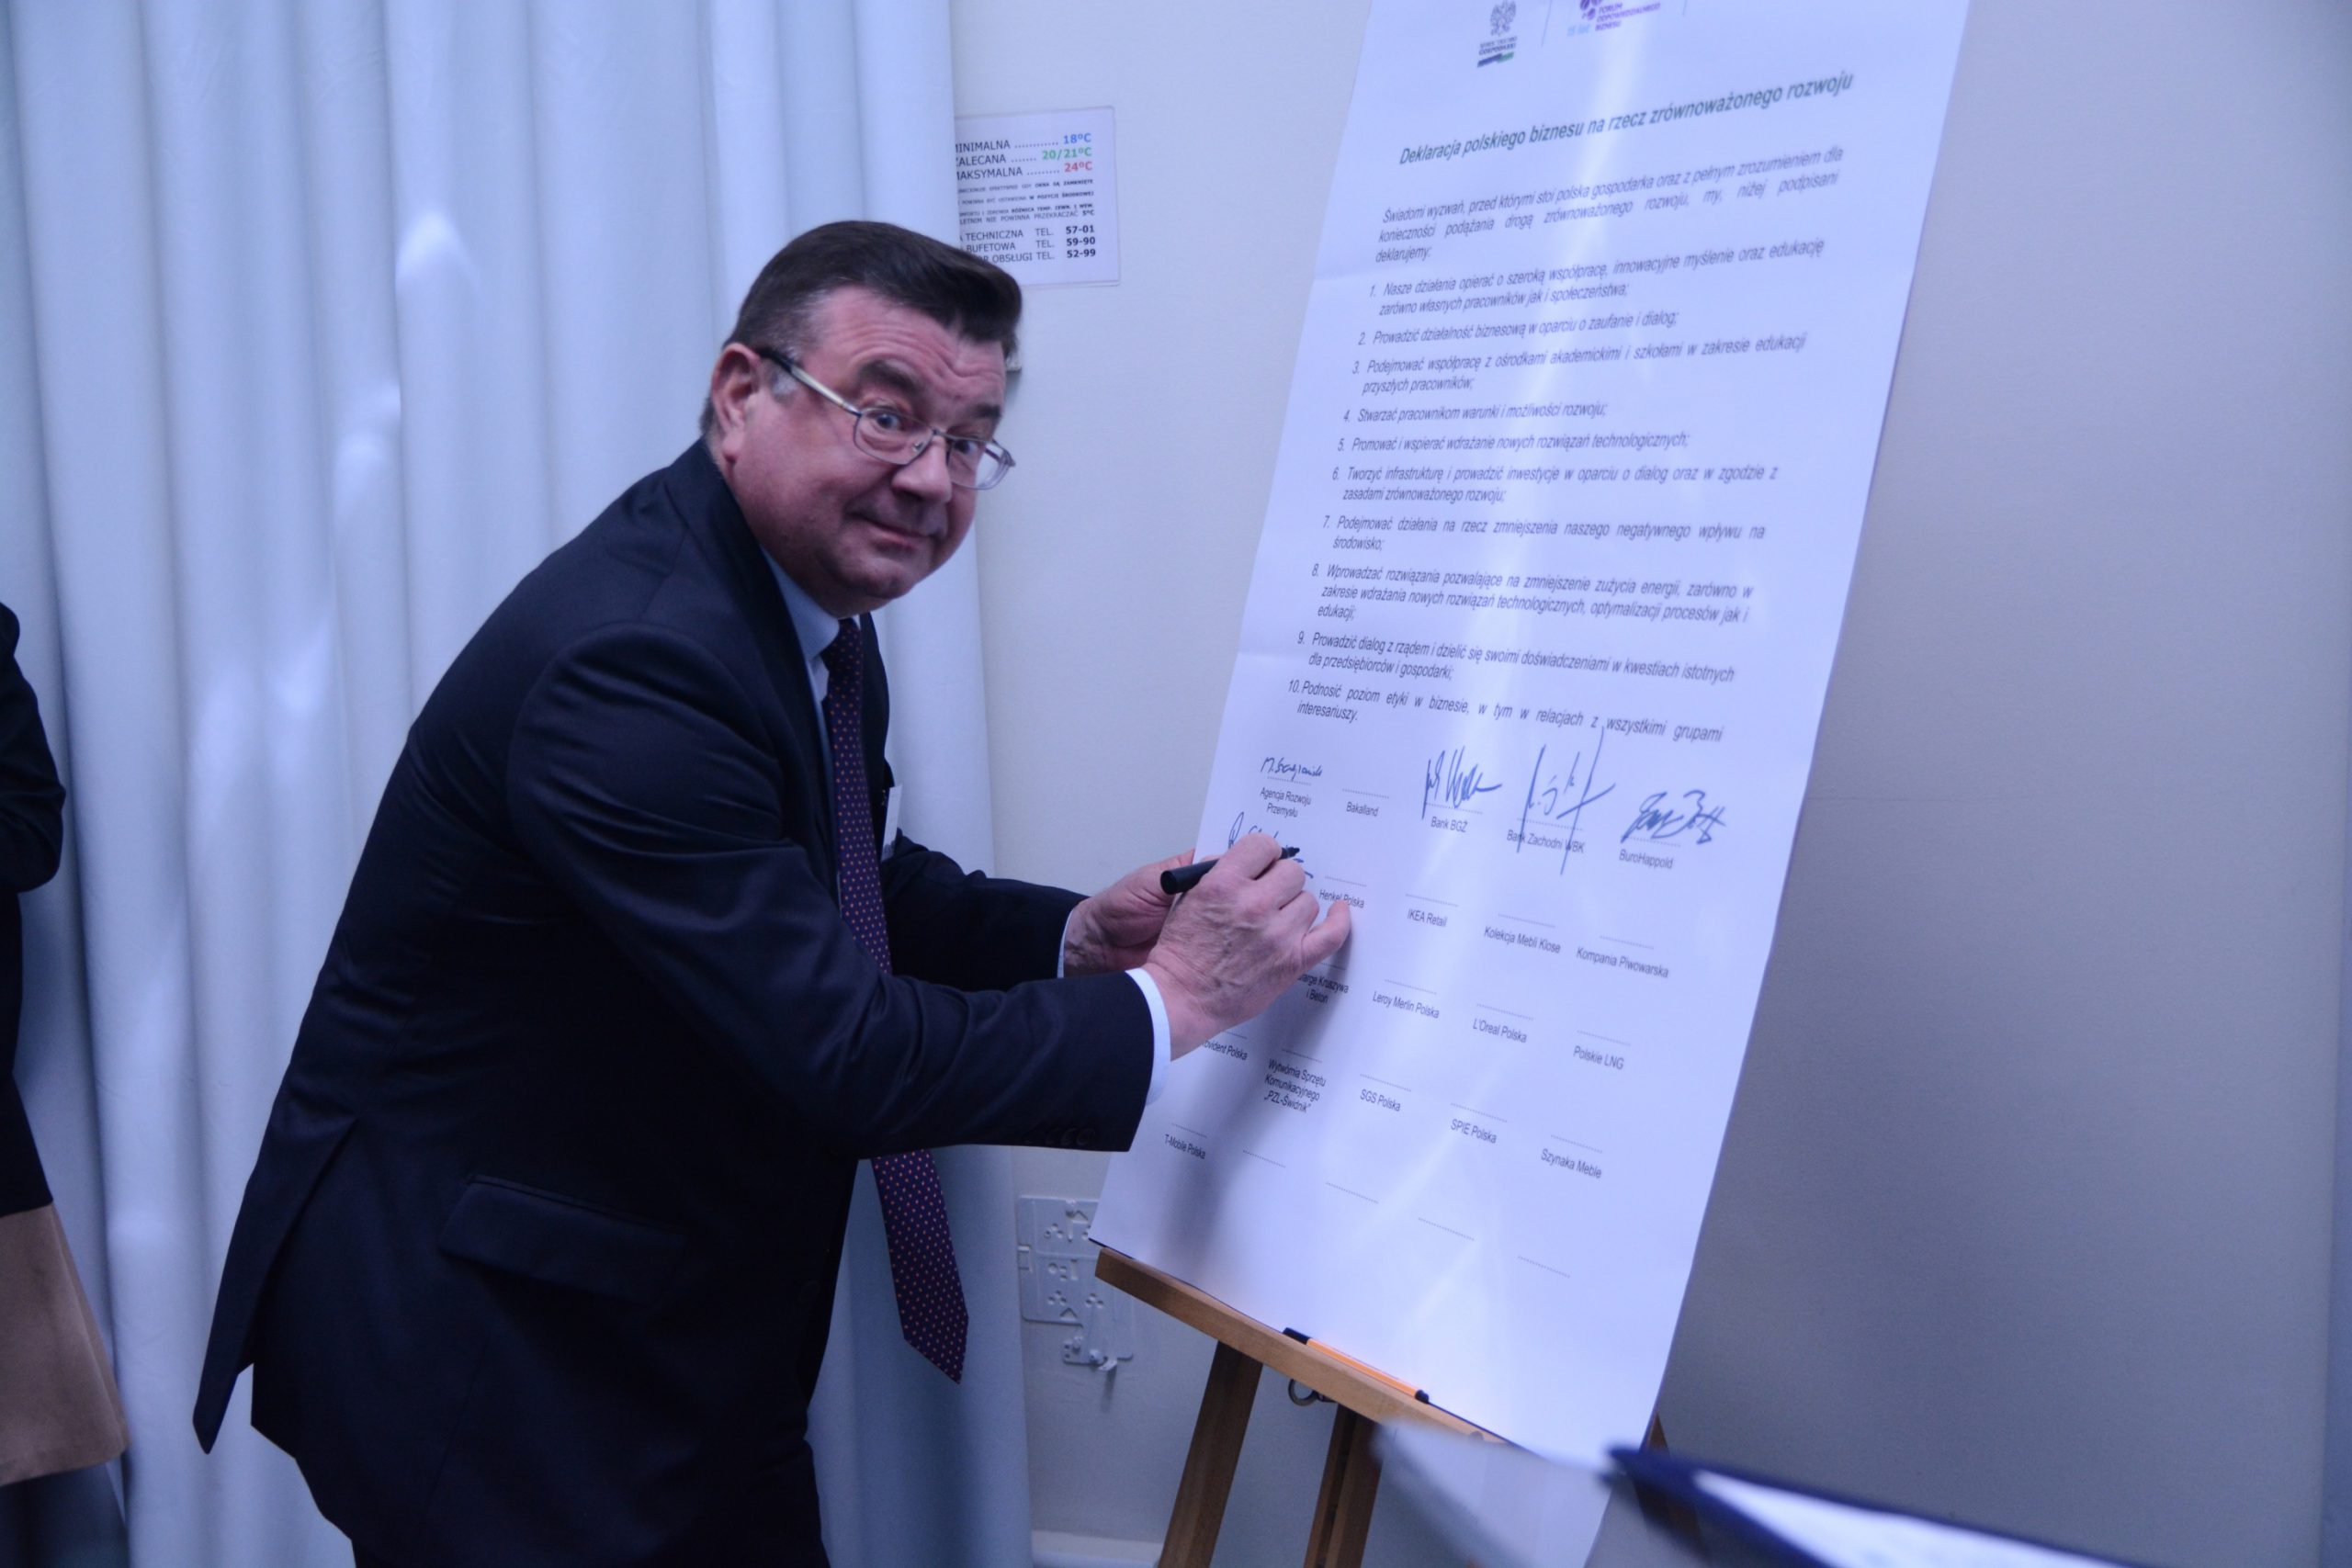 Henkel podpisał Deklarację Polskiego Biznesu na rzecz Zrównoważonego Rozwoju